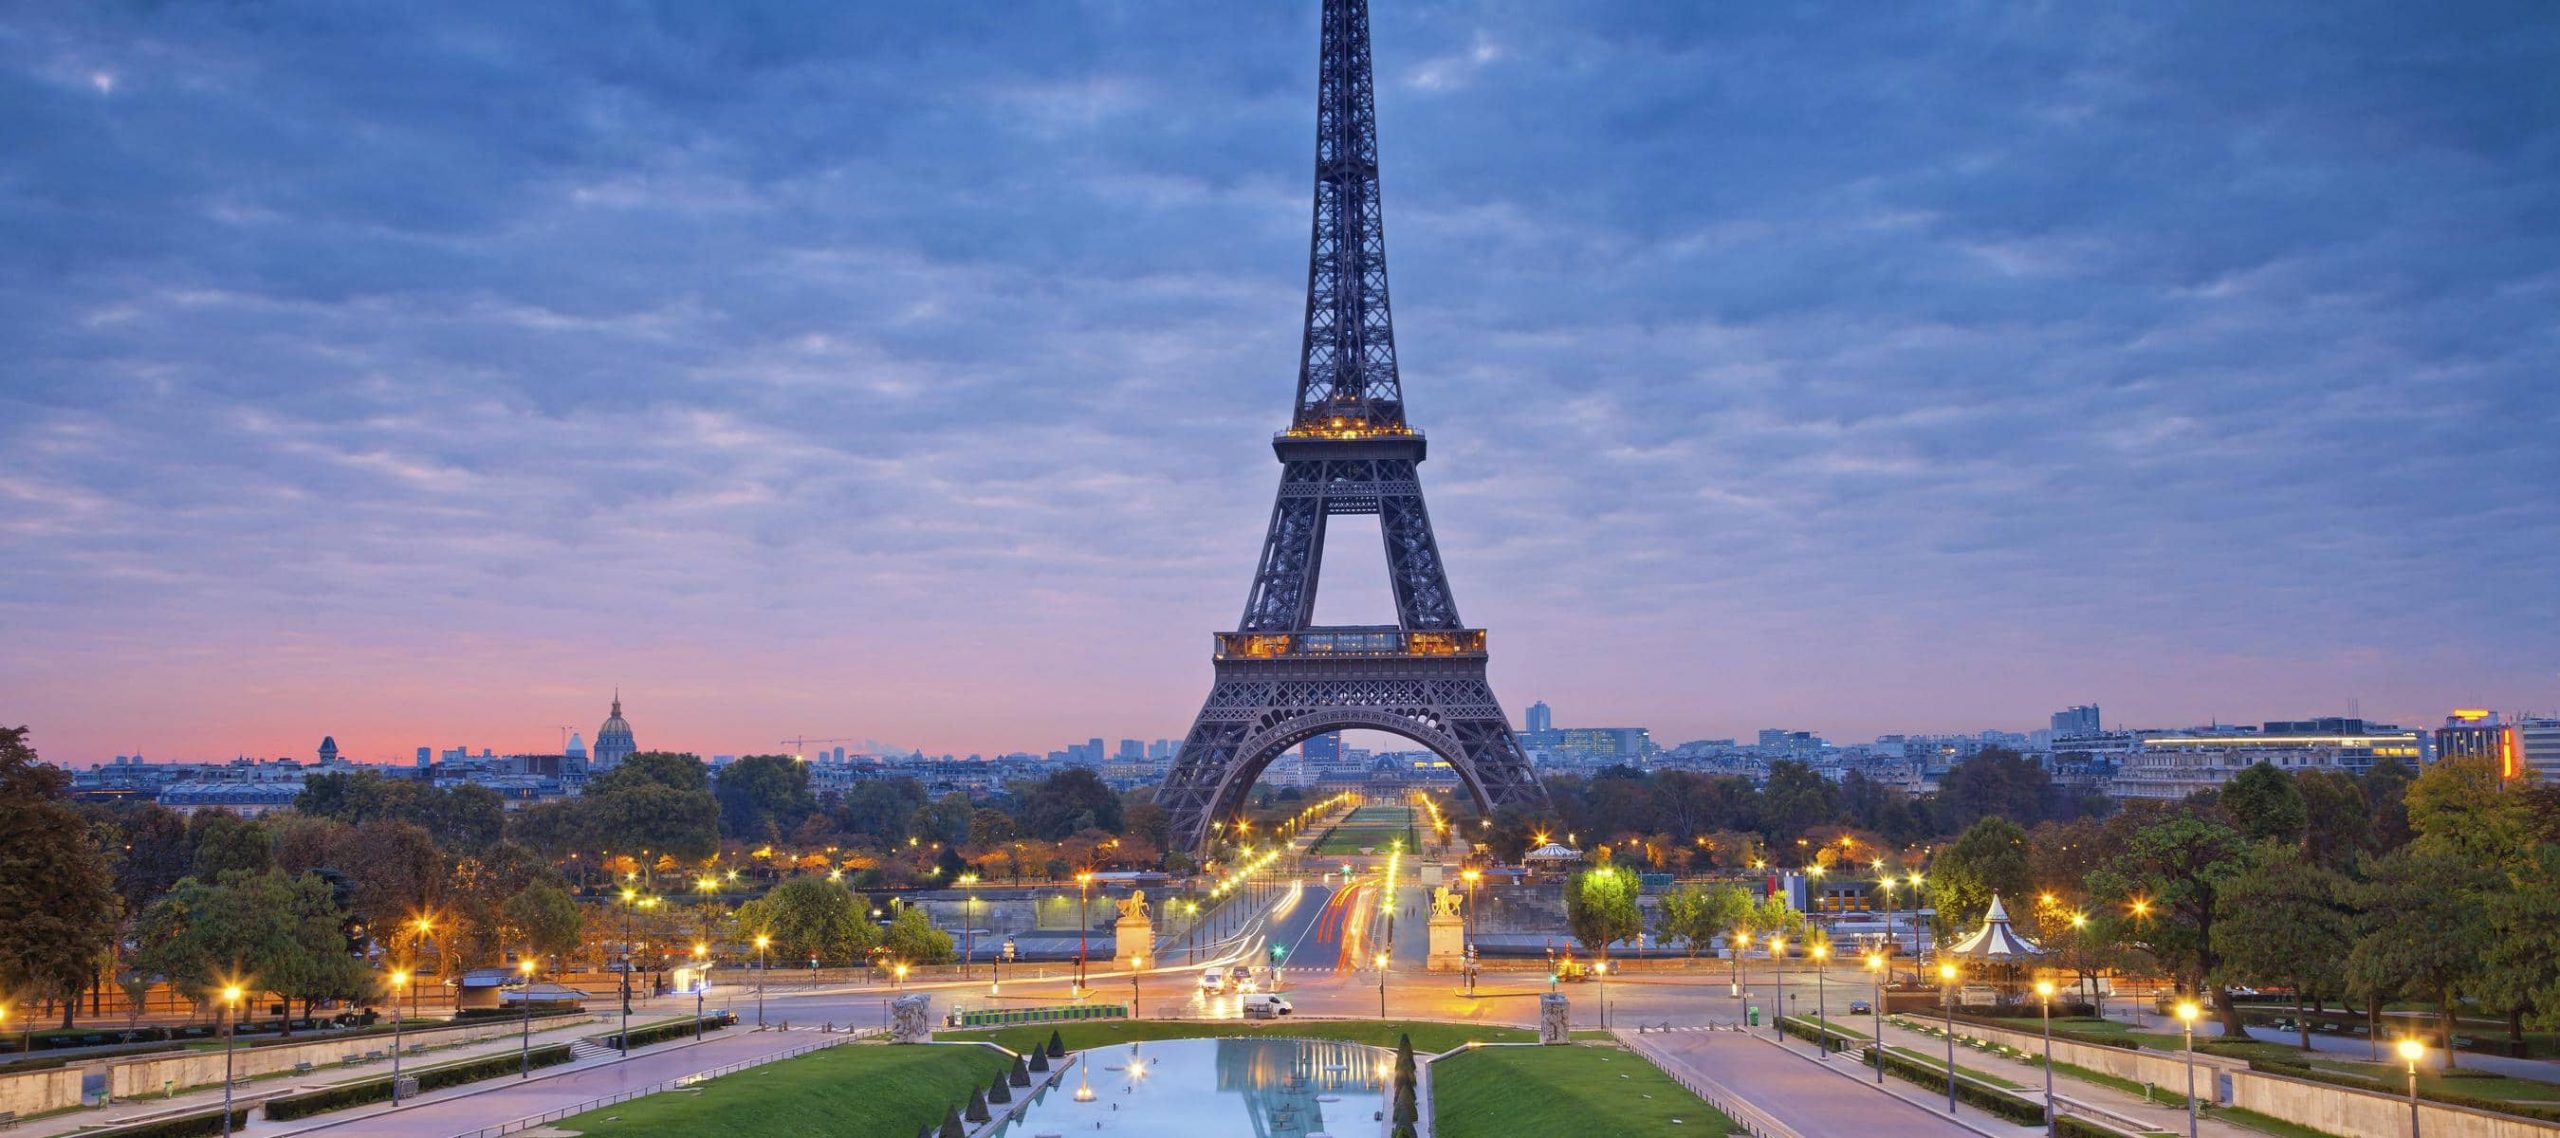 عاصمة فرنسا وأهم الأماكن السياحية بها